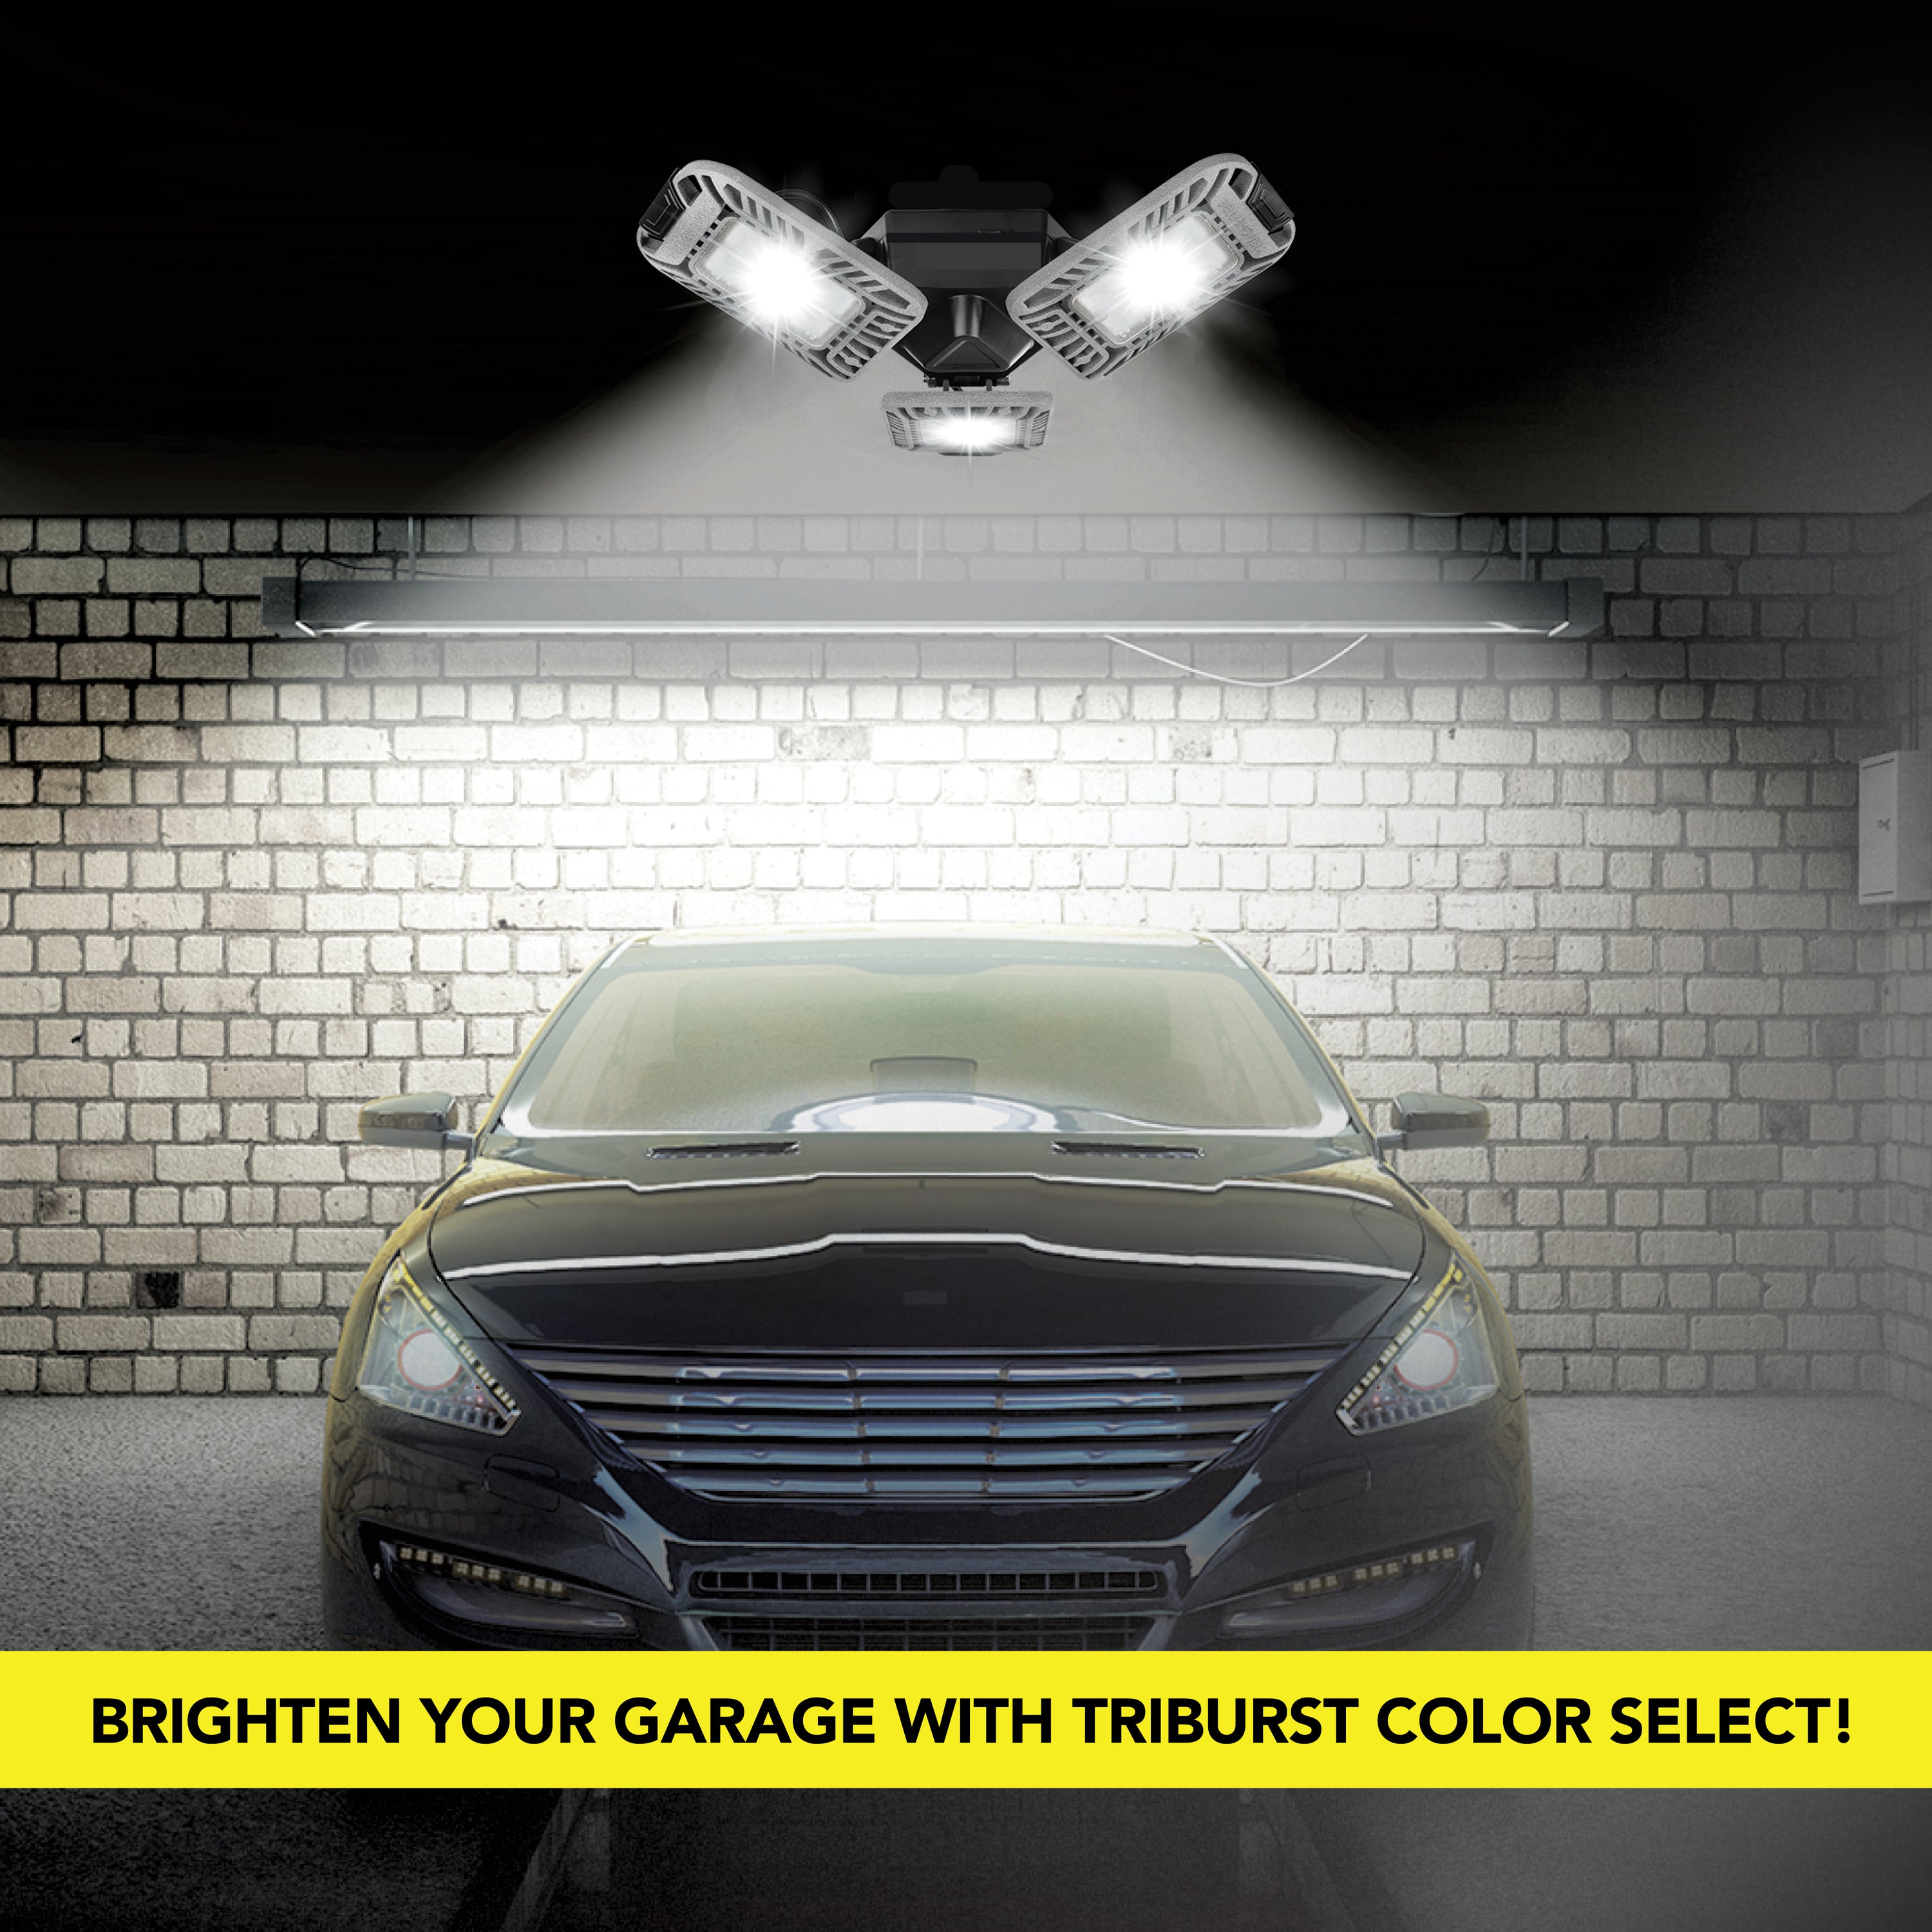 Bell+Howell Triburst Color Select LED Garage Light, 5500 Lumen 3000k/4500k/5500k LED Garage Ceiling Lights, Screw in LED Garage Lights, Bright LED Lights for Garage with 3 Mobile Panels